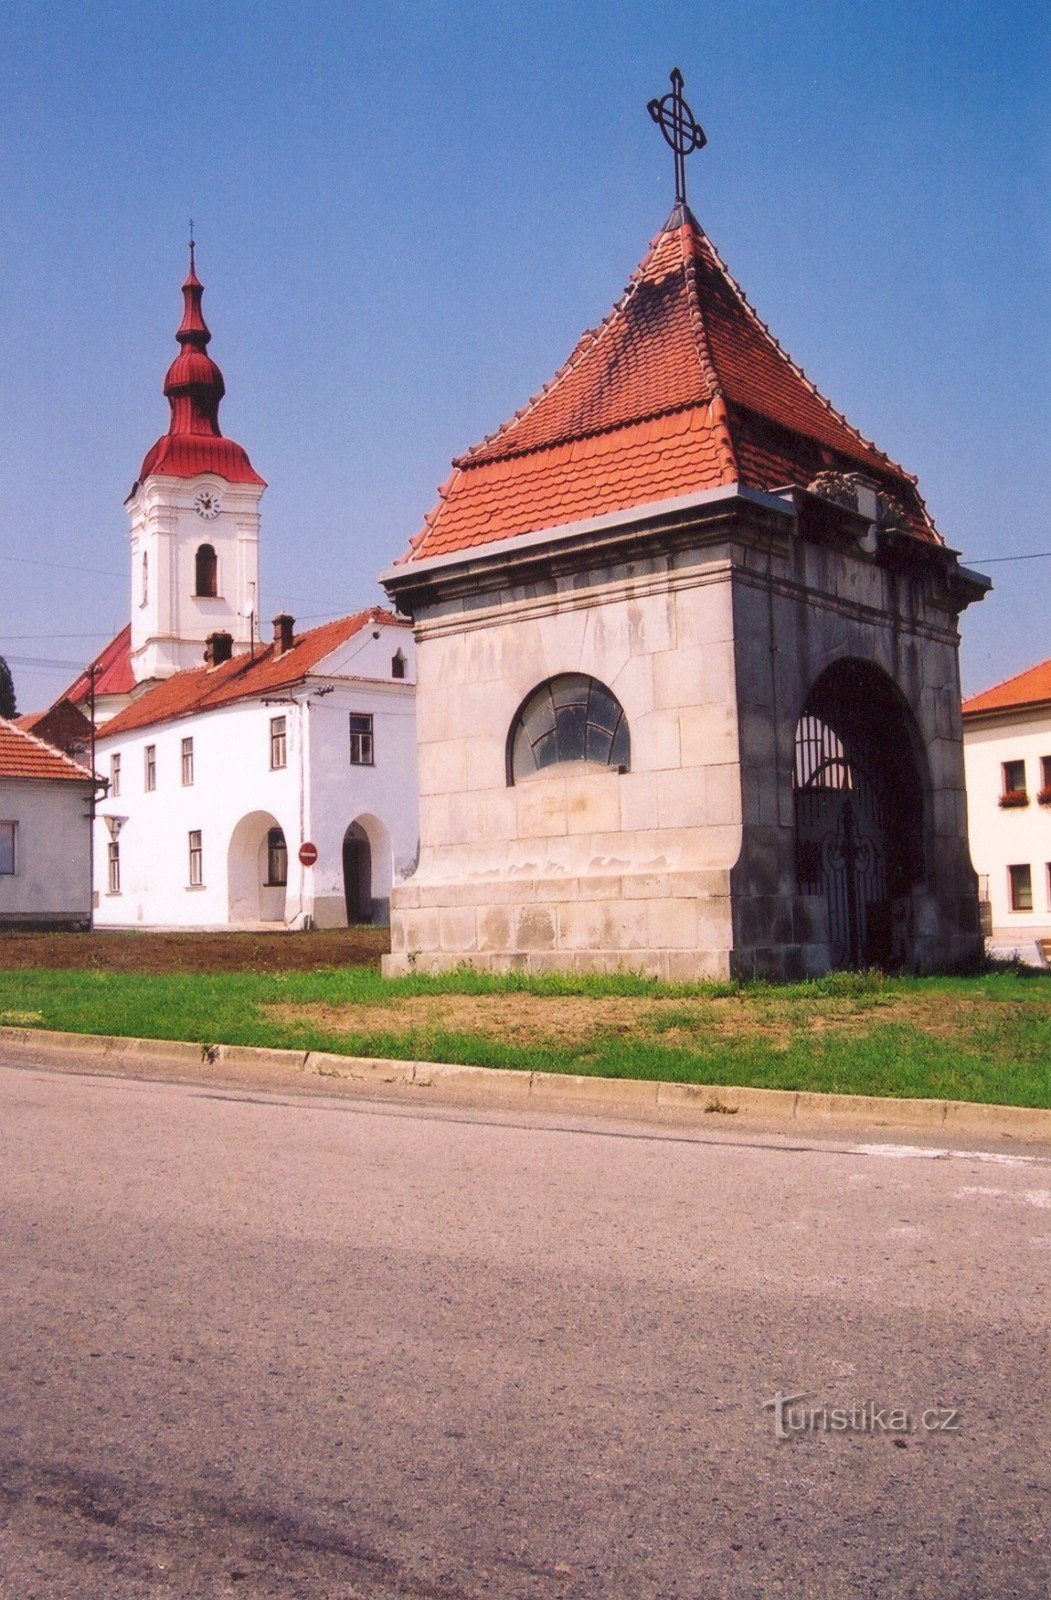 Modřice - chapel of St. Wenceslas